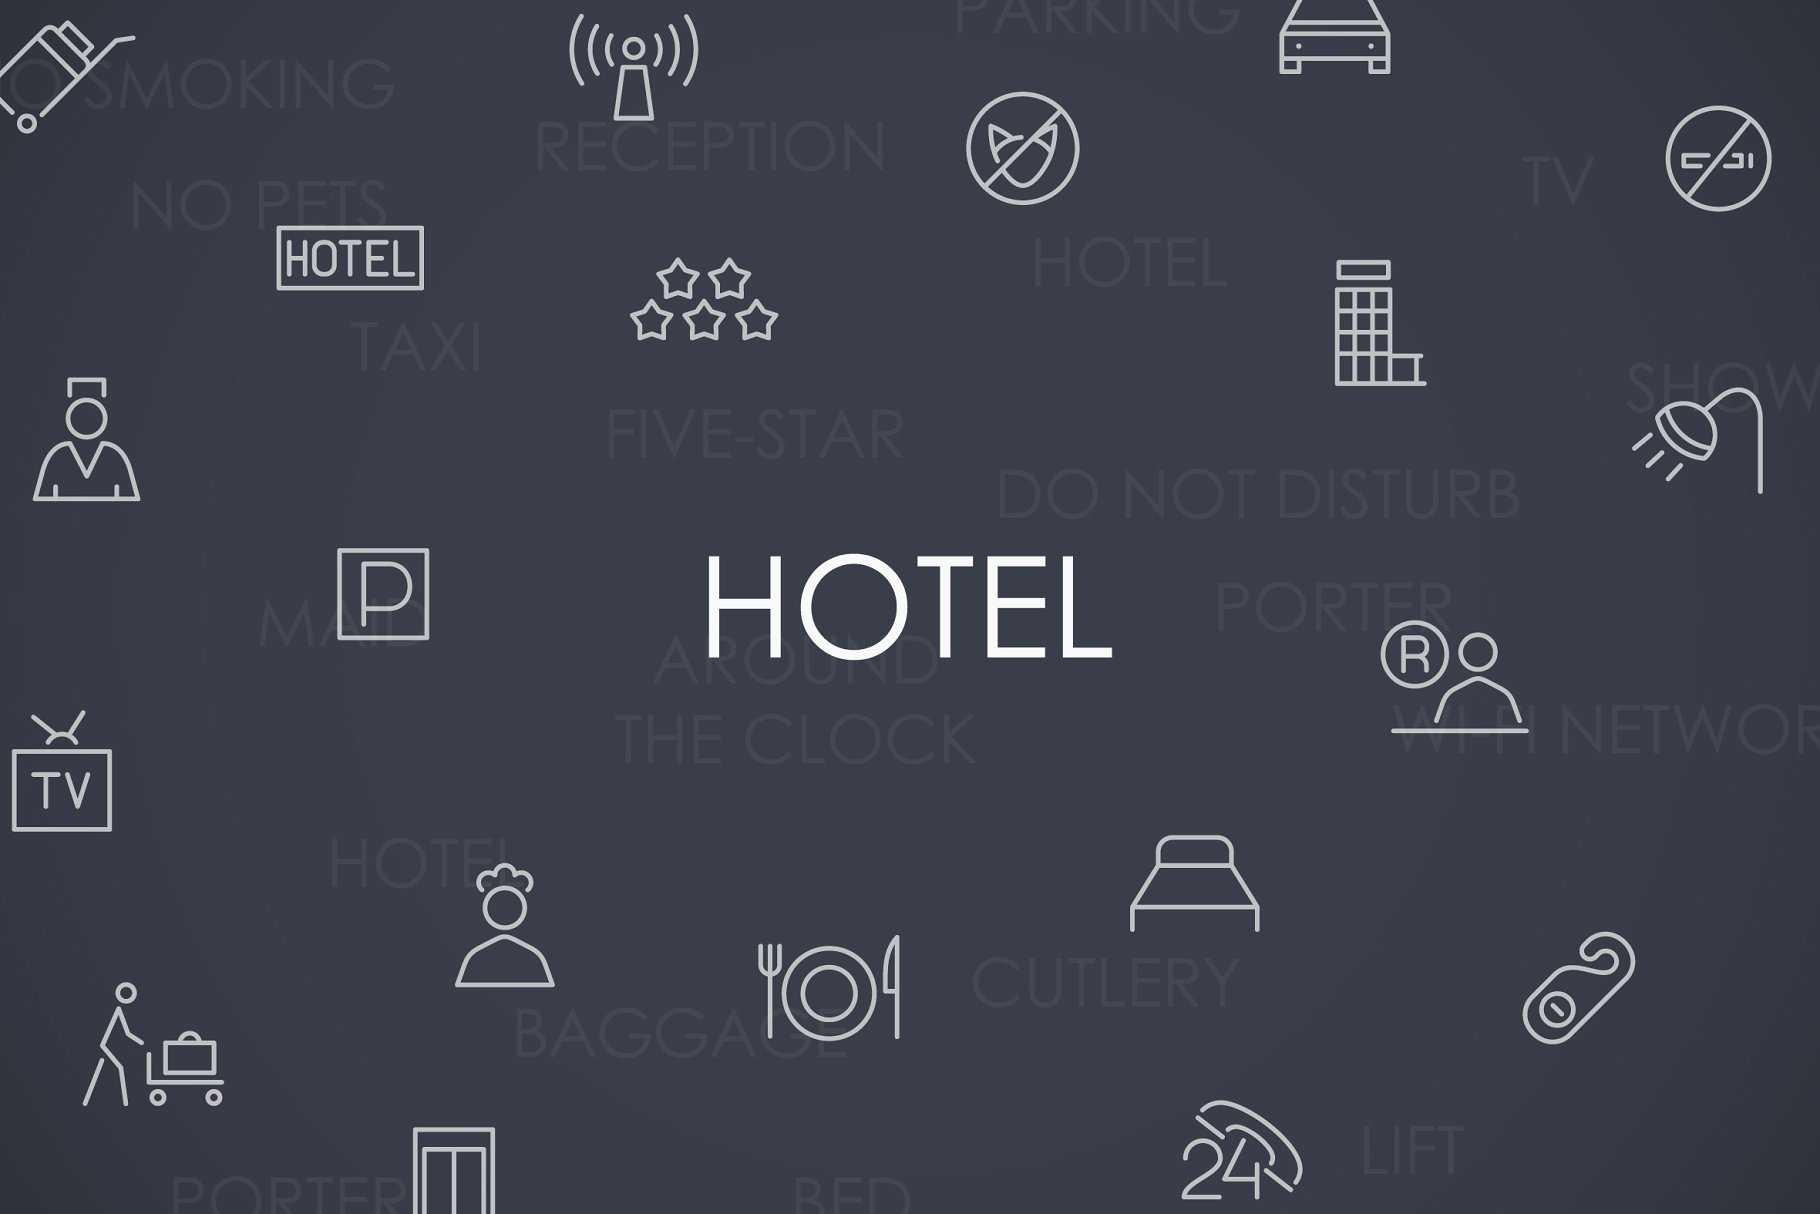 酒店相关主题的线型图标合集 Hotel thinline i